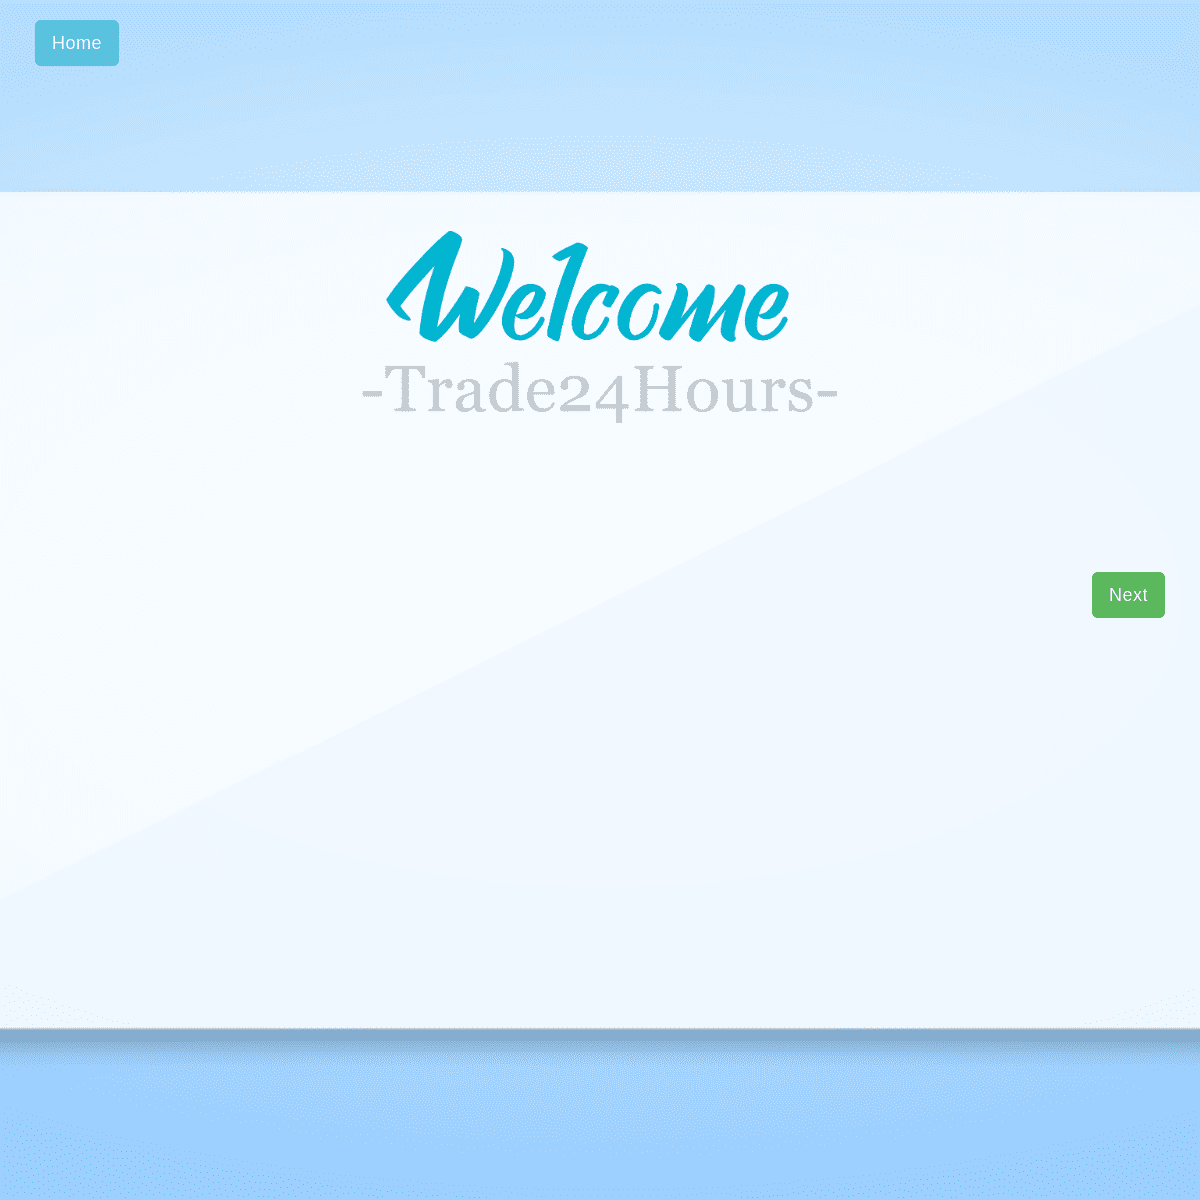 Trade 24 Hour